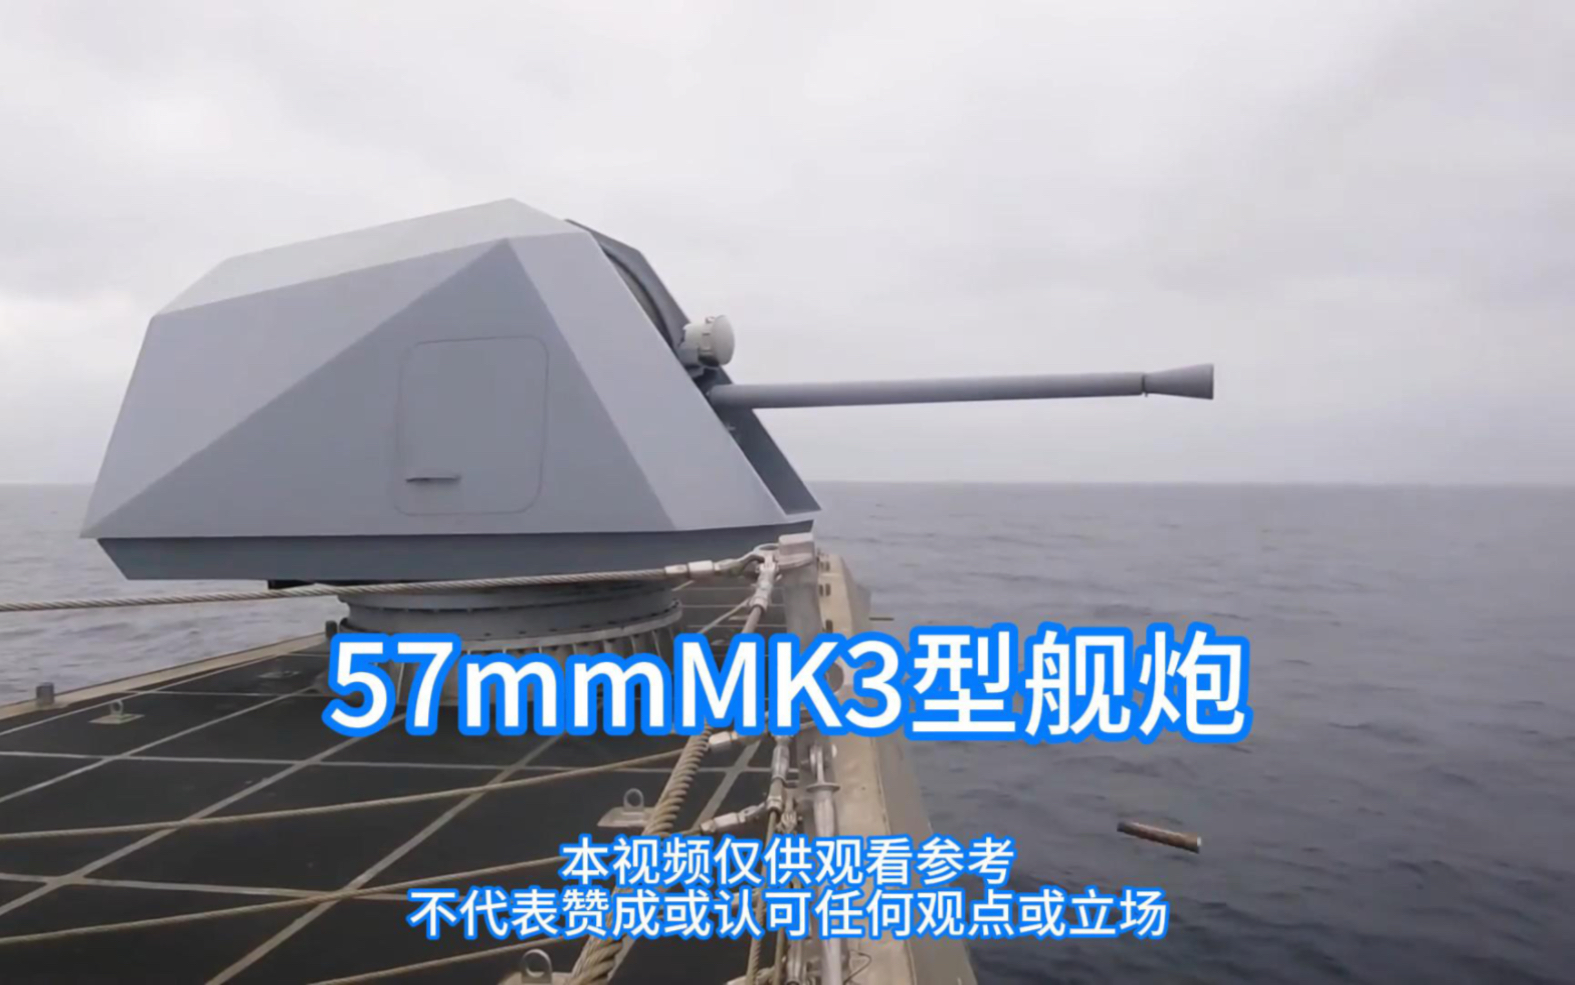 57mmMK3型舰炮